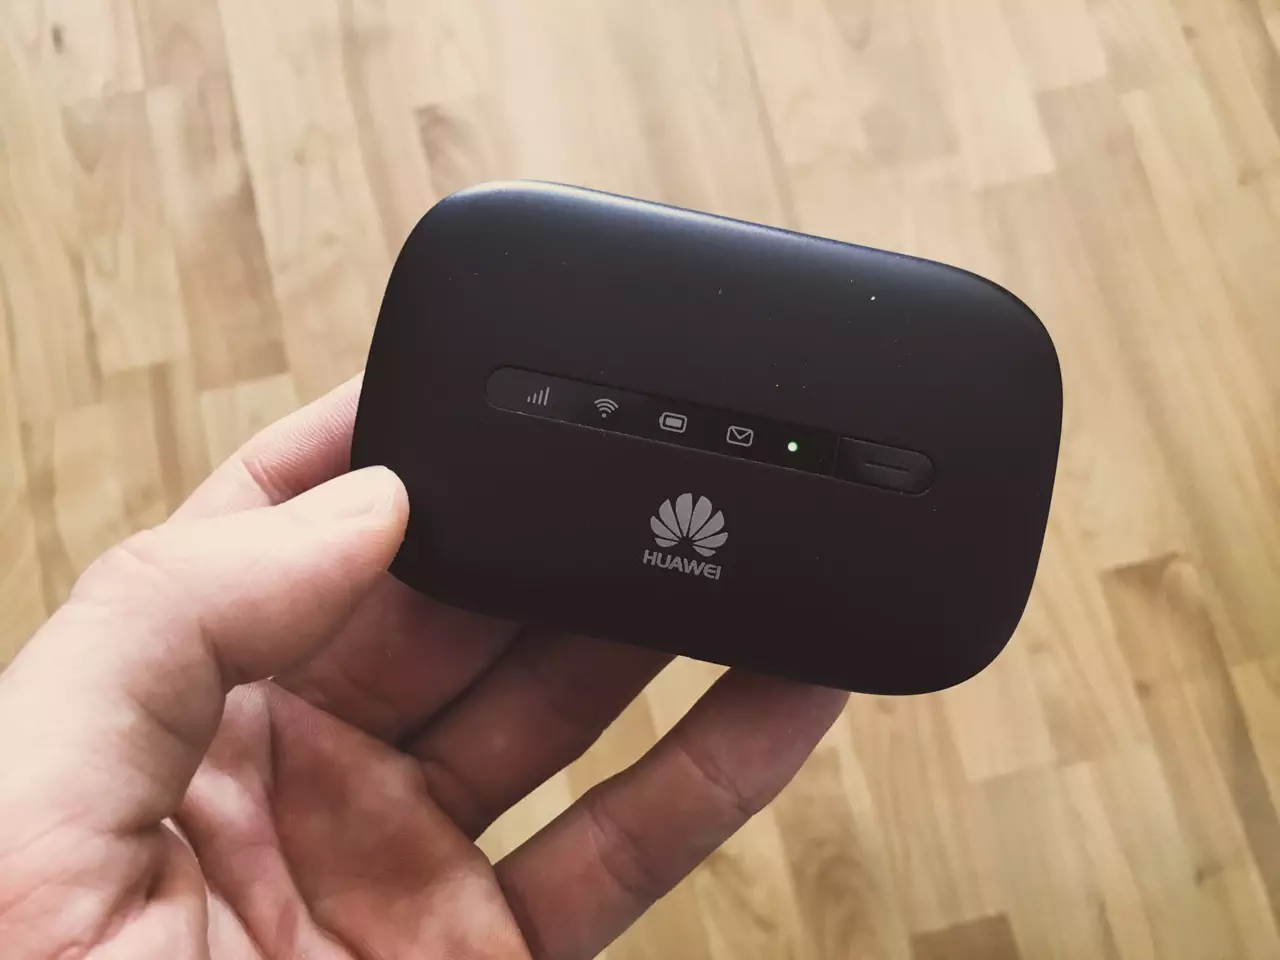 Mobiler Router mit Simkarte: Erfahrungen mit dem Huawei E5330